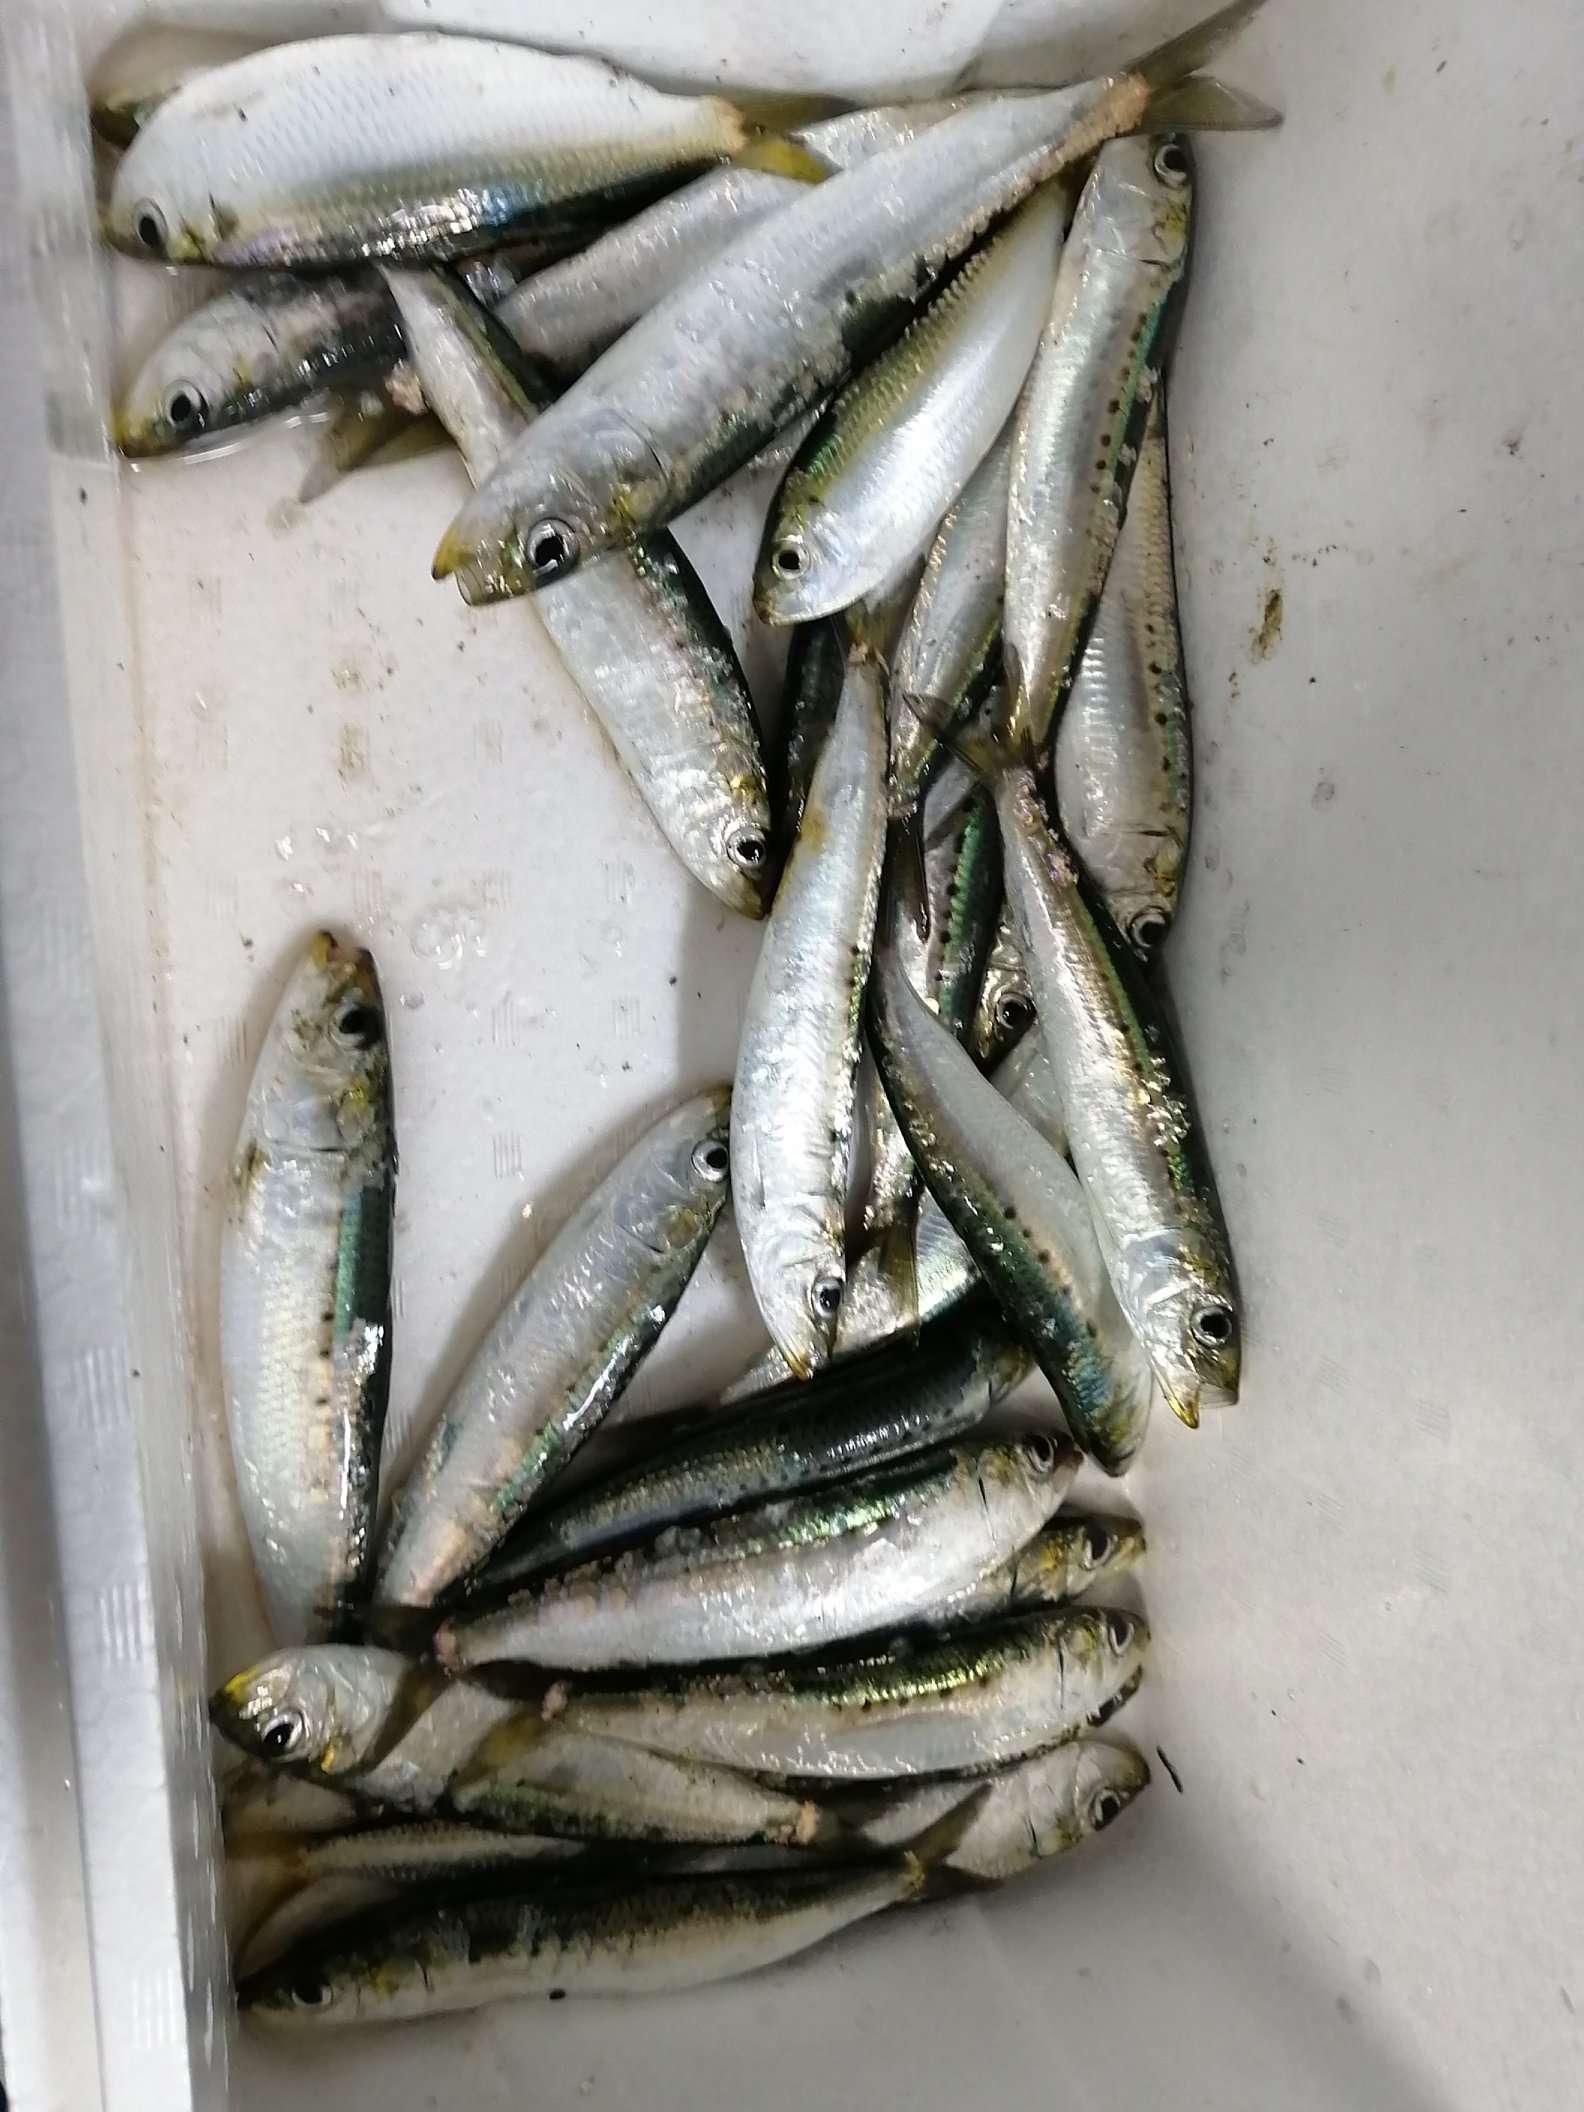 sardine.jpeg